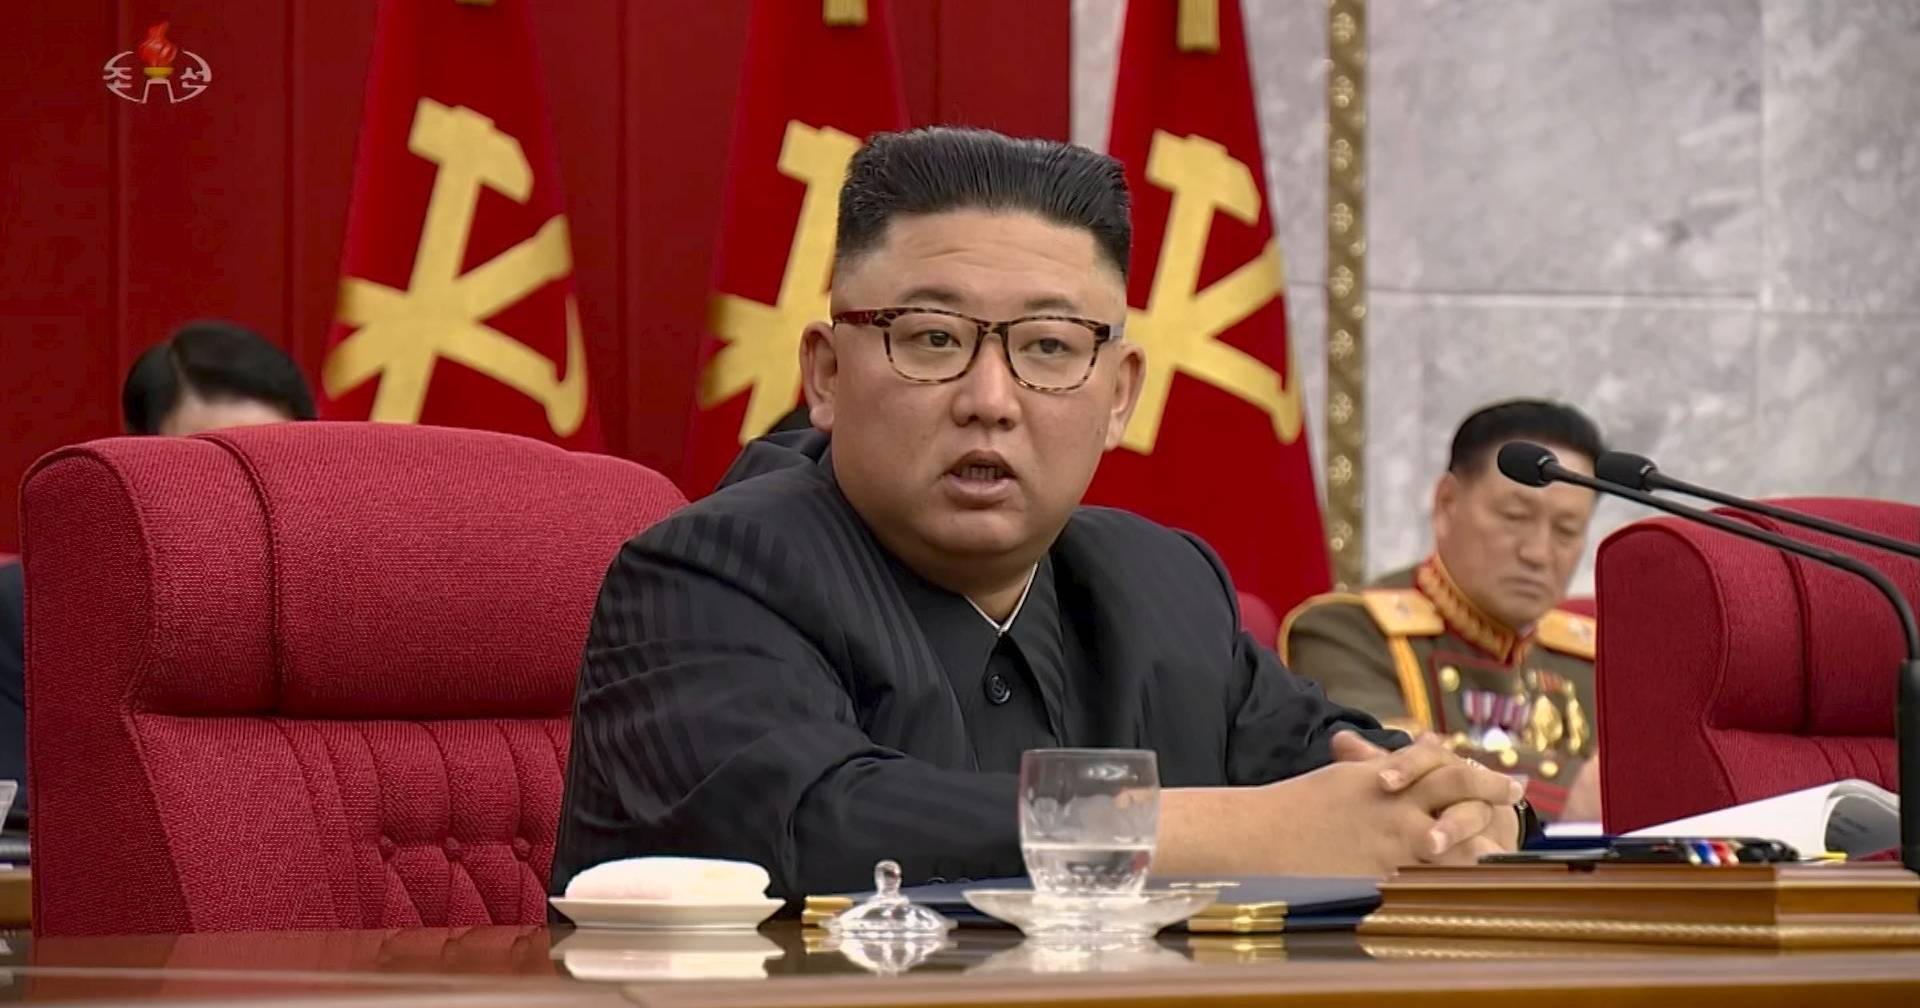 朝鲜领袖金正恩主持会议肯定北韩目前抗疫成果